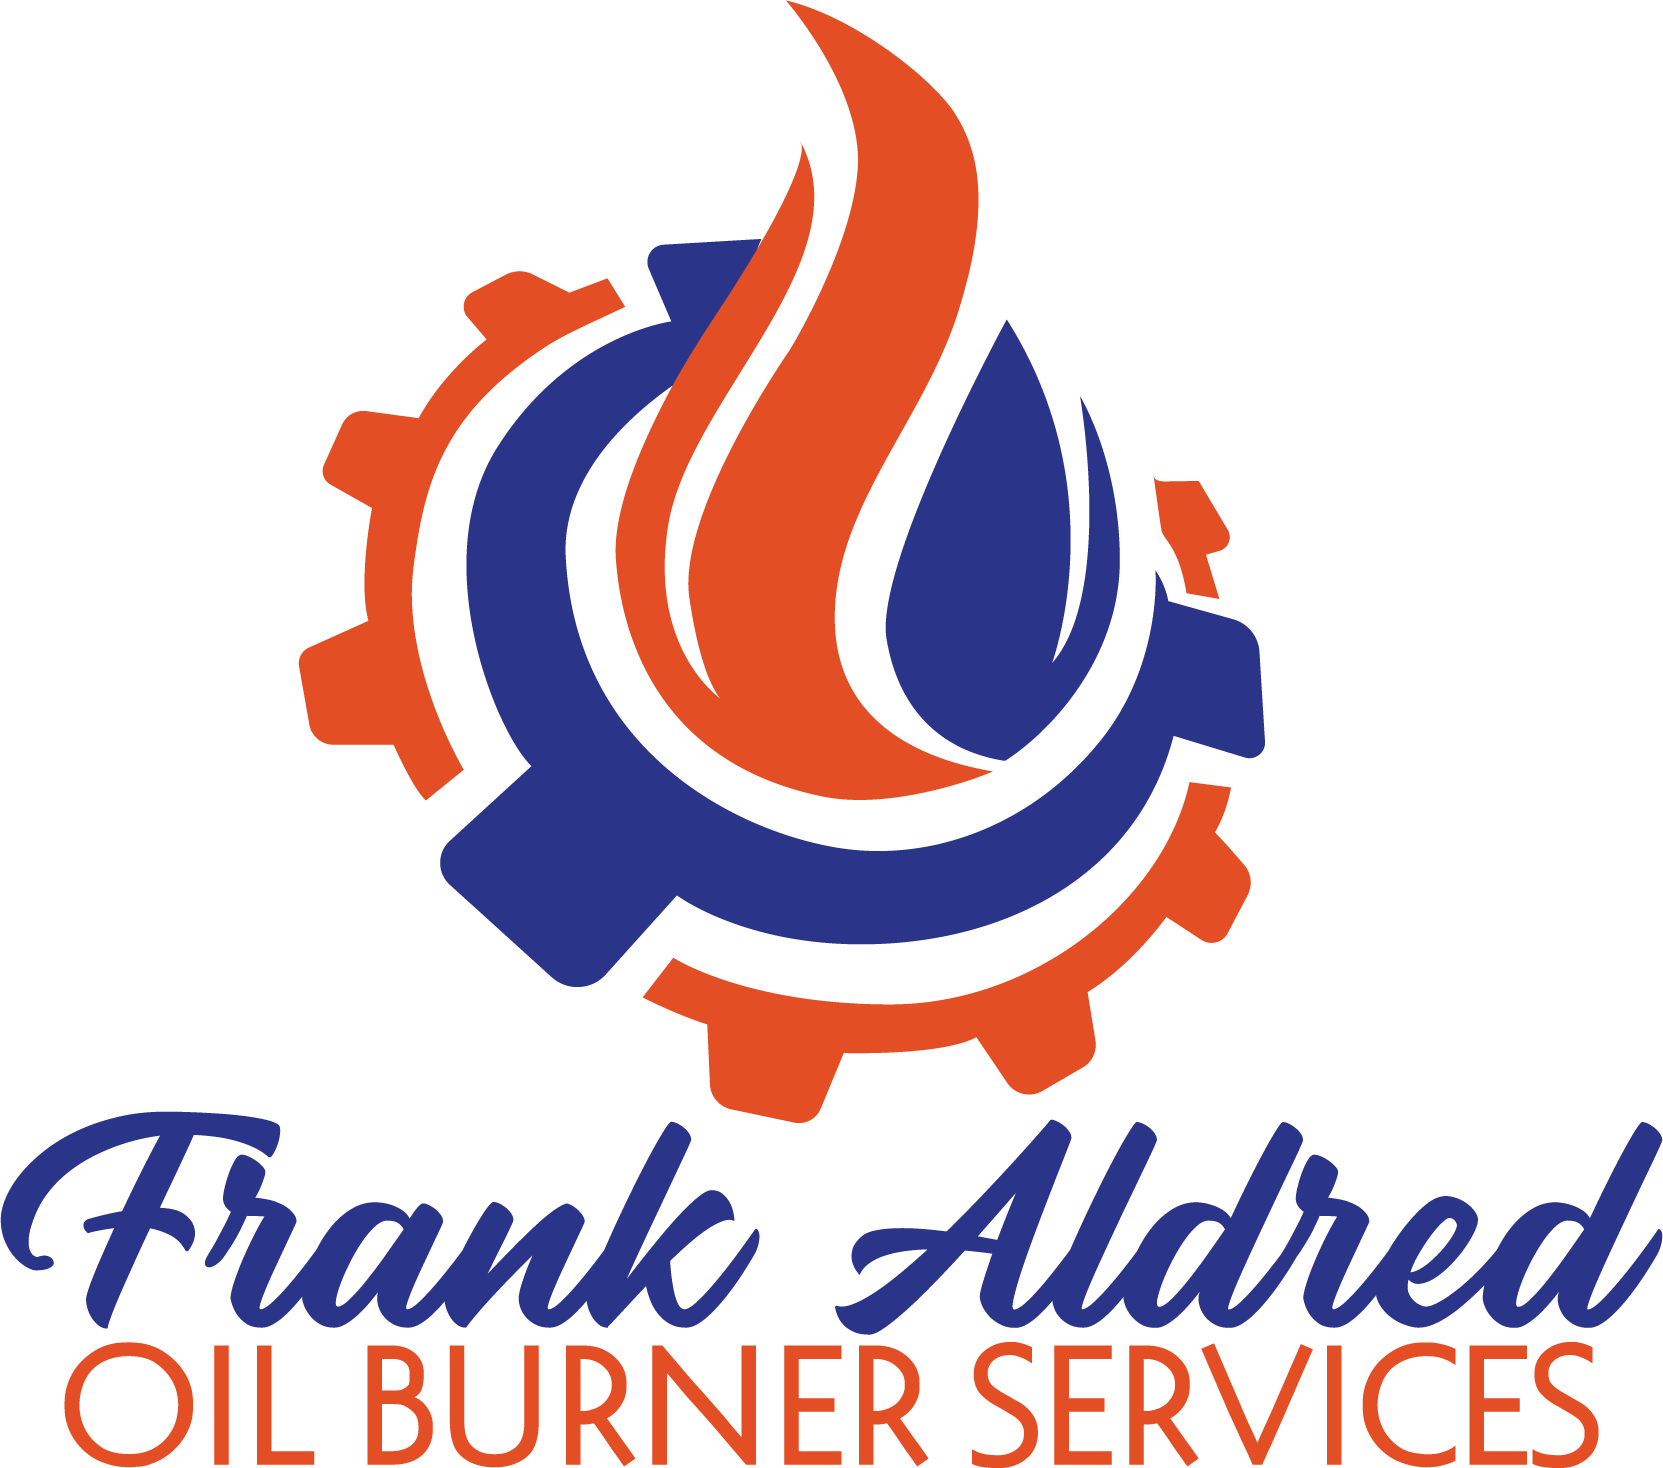 Frank Aldred Oil Burner Services Logo